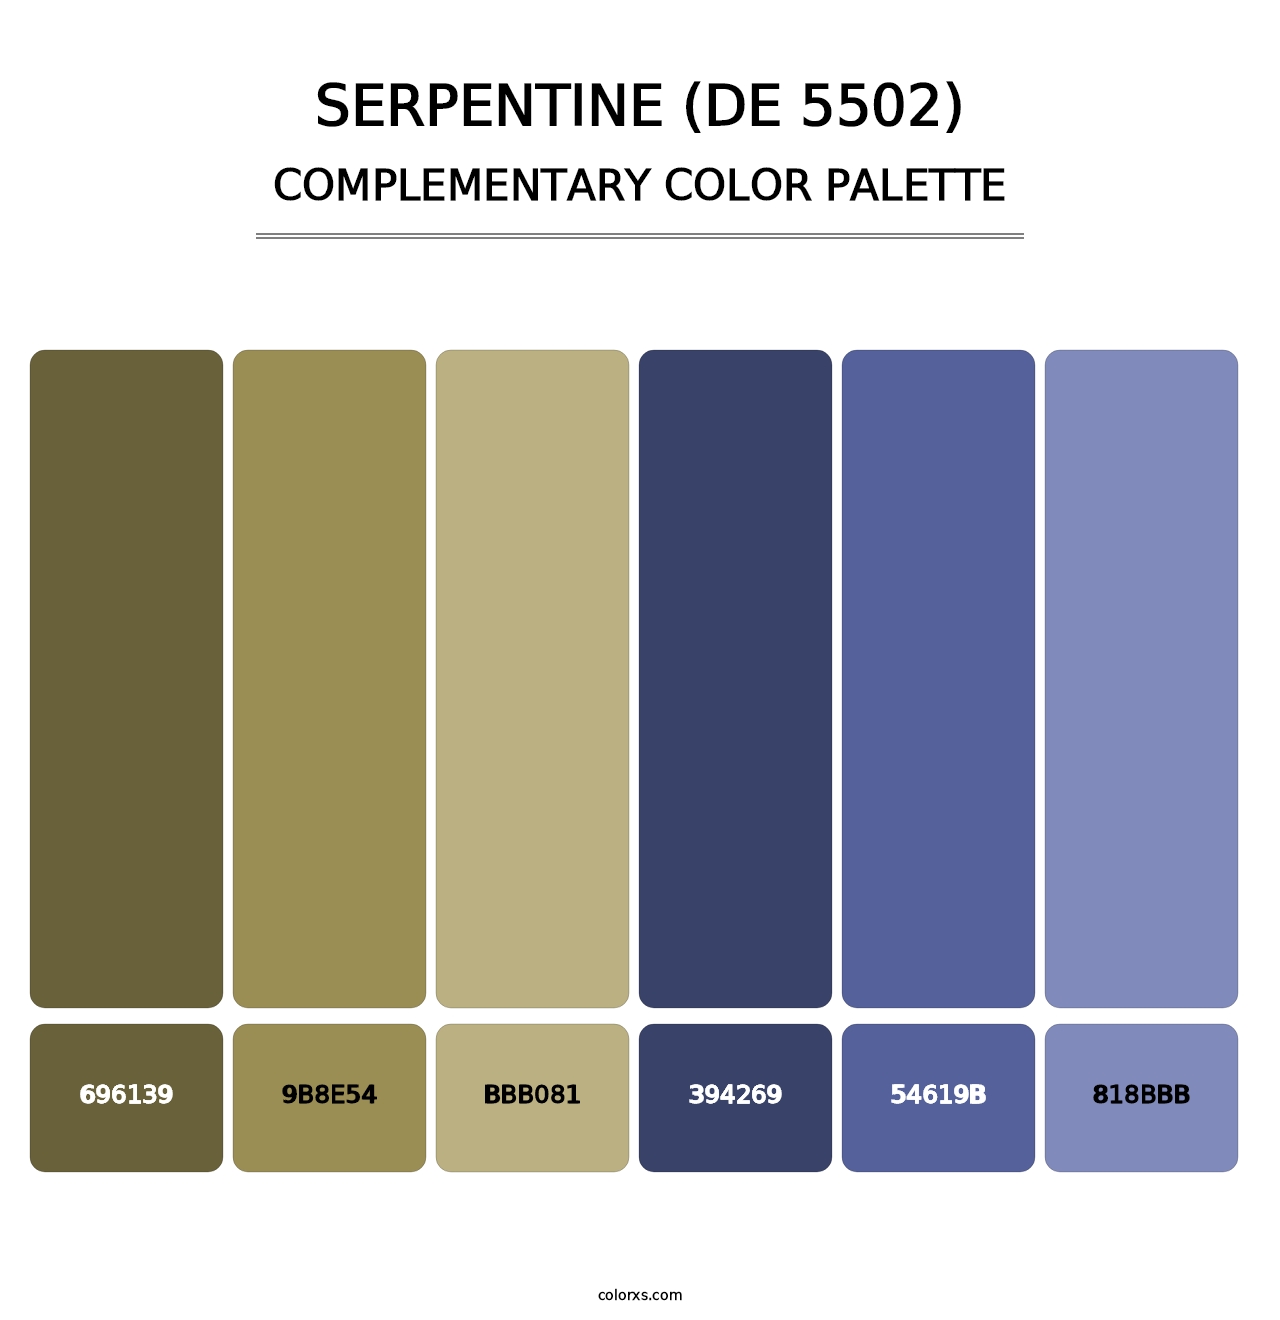 Serpentine (DE 5502) - Complementary Color Palette